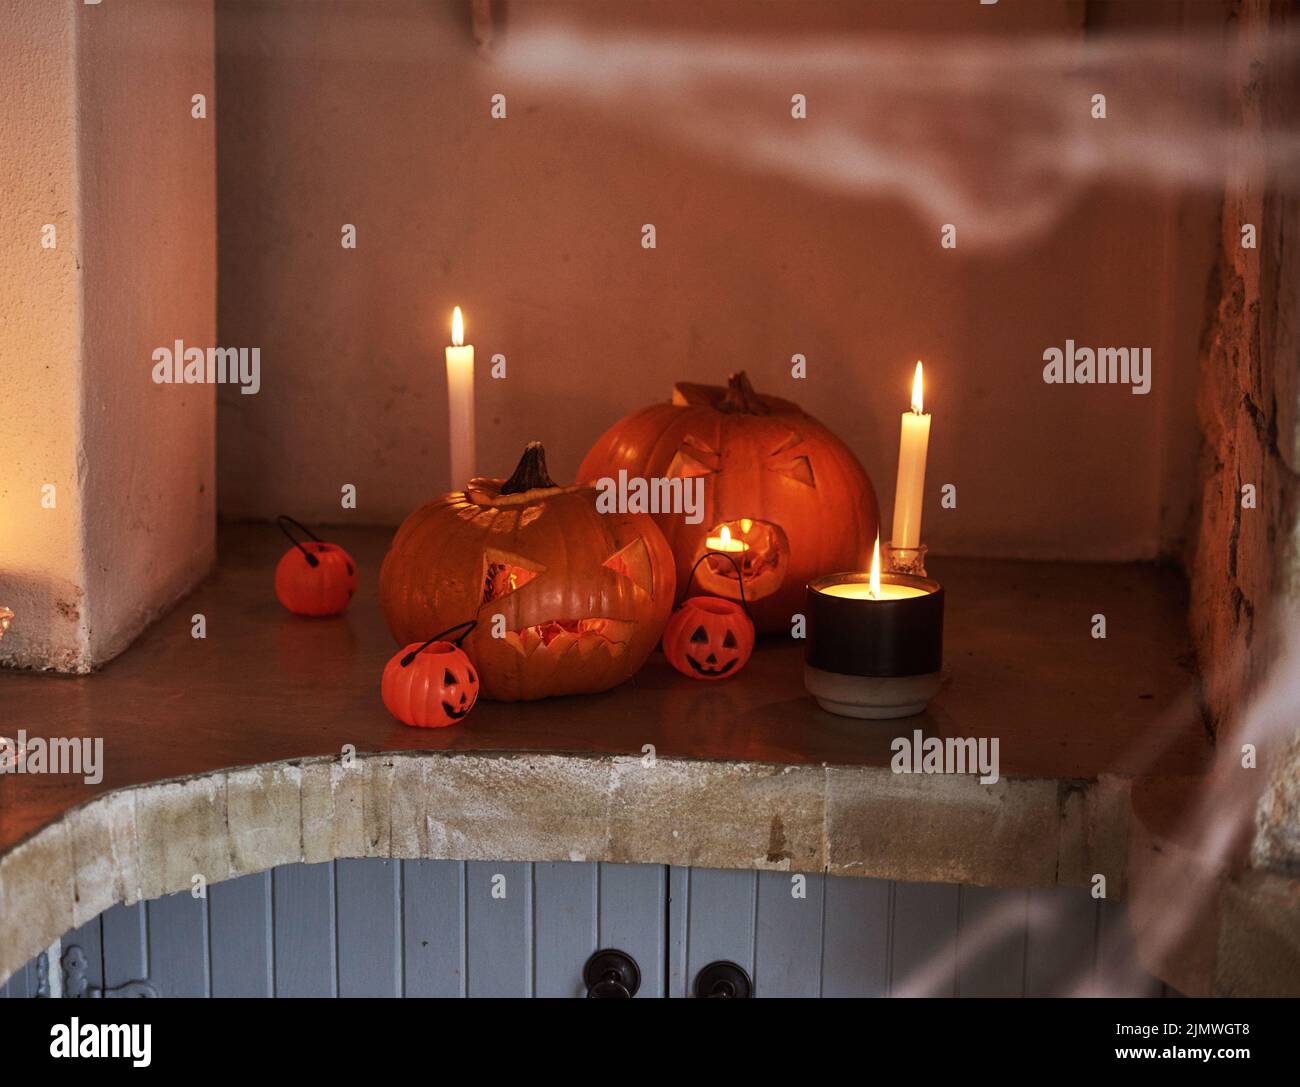 Dies ist ein beängstigender Anblick. Stillleben von geschnitzten Kürbissen und brennenden Kerzen zusammen zur Feier von halloween platziert. Stockfoto